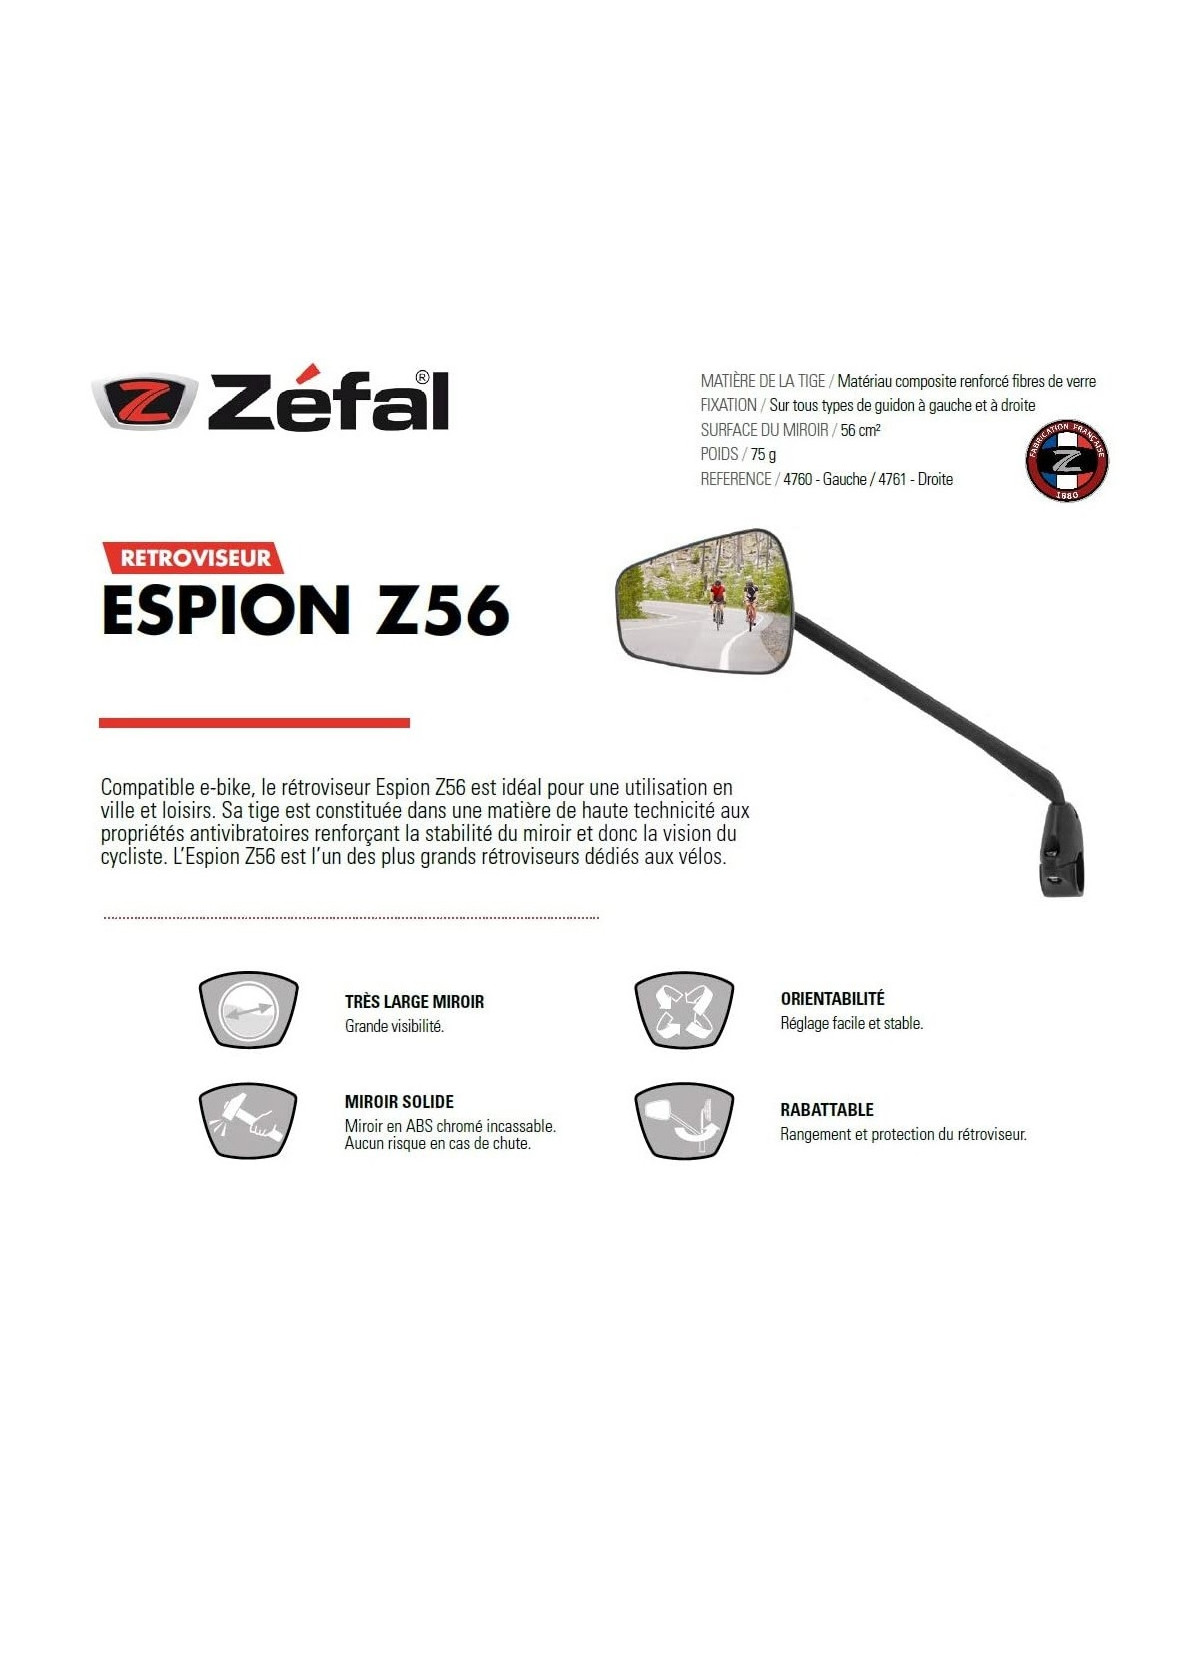 Zefal Espion Z56 Rétroviseur gauche à miroir large pour vélo